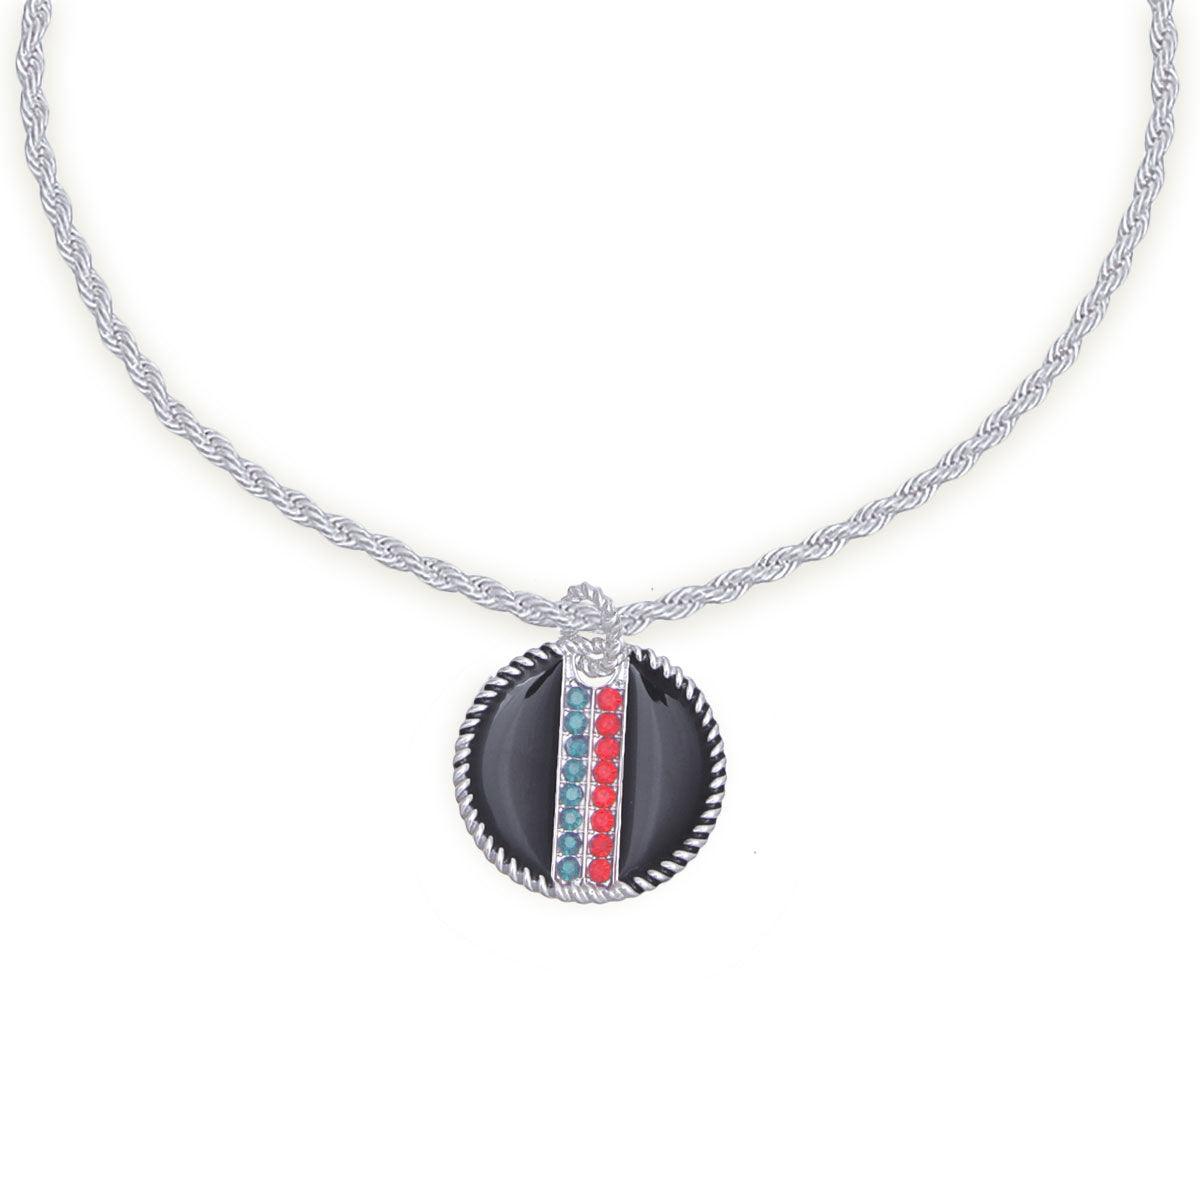 Rhinestone Embellished Fashion Necklace: Silver and Black Medallion